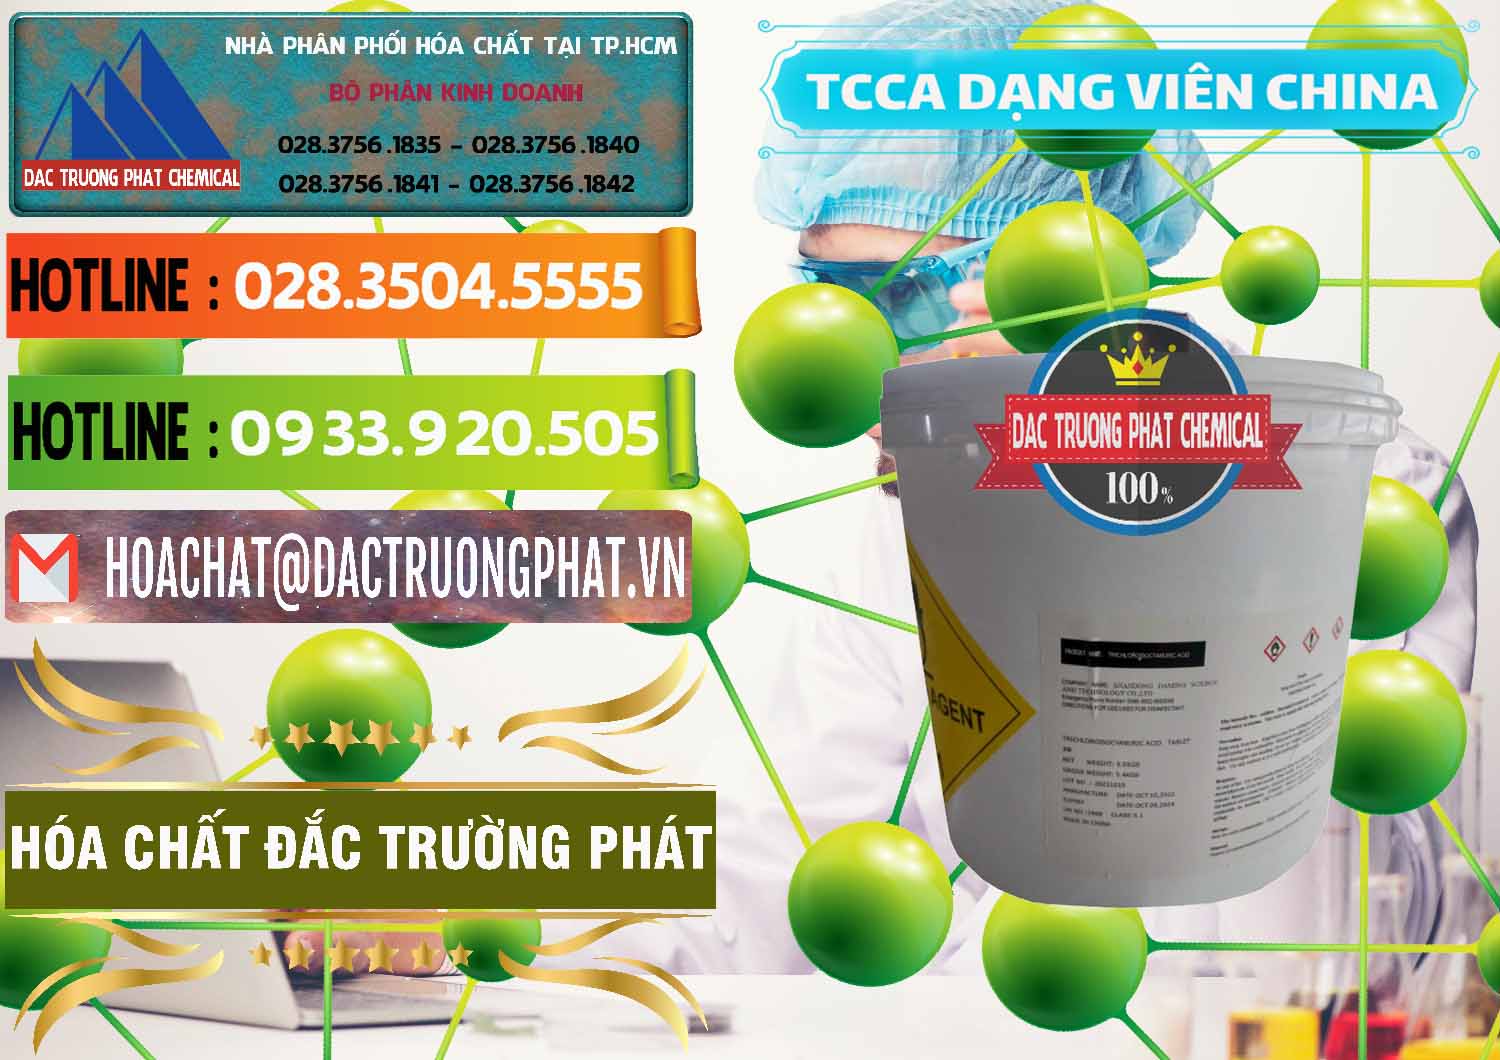 Nơi bán TCCA - Acid Trichloroisocyanuric Dạng Viên Thùng 5kg Trung Quốc China - 0379 - Công ty cung cấp ( phân phối ) hóa chất tại TP.HCM - cungcaphoachat.com.vn